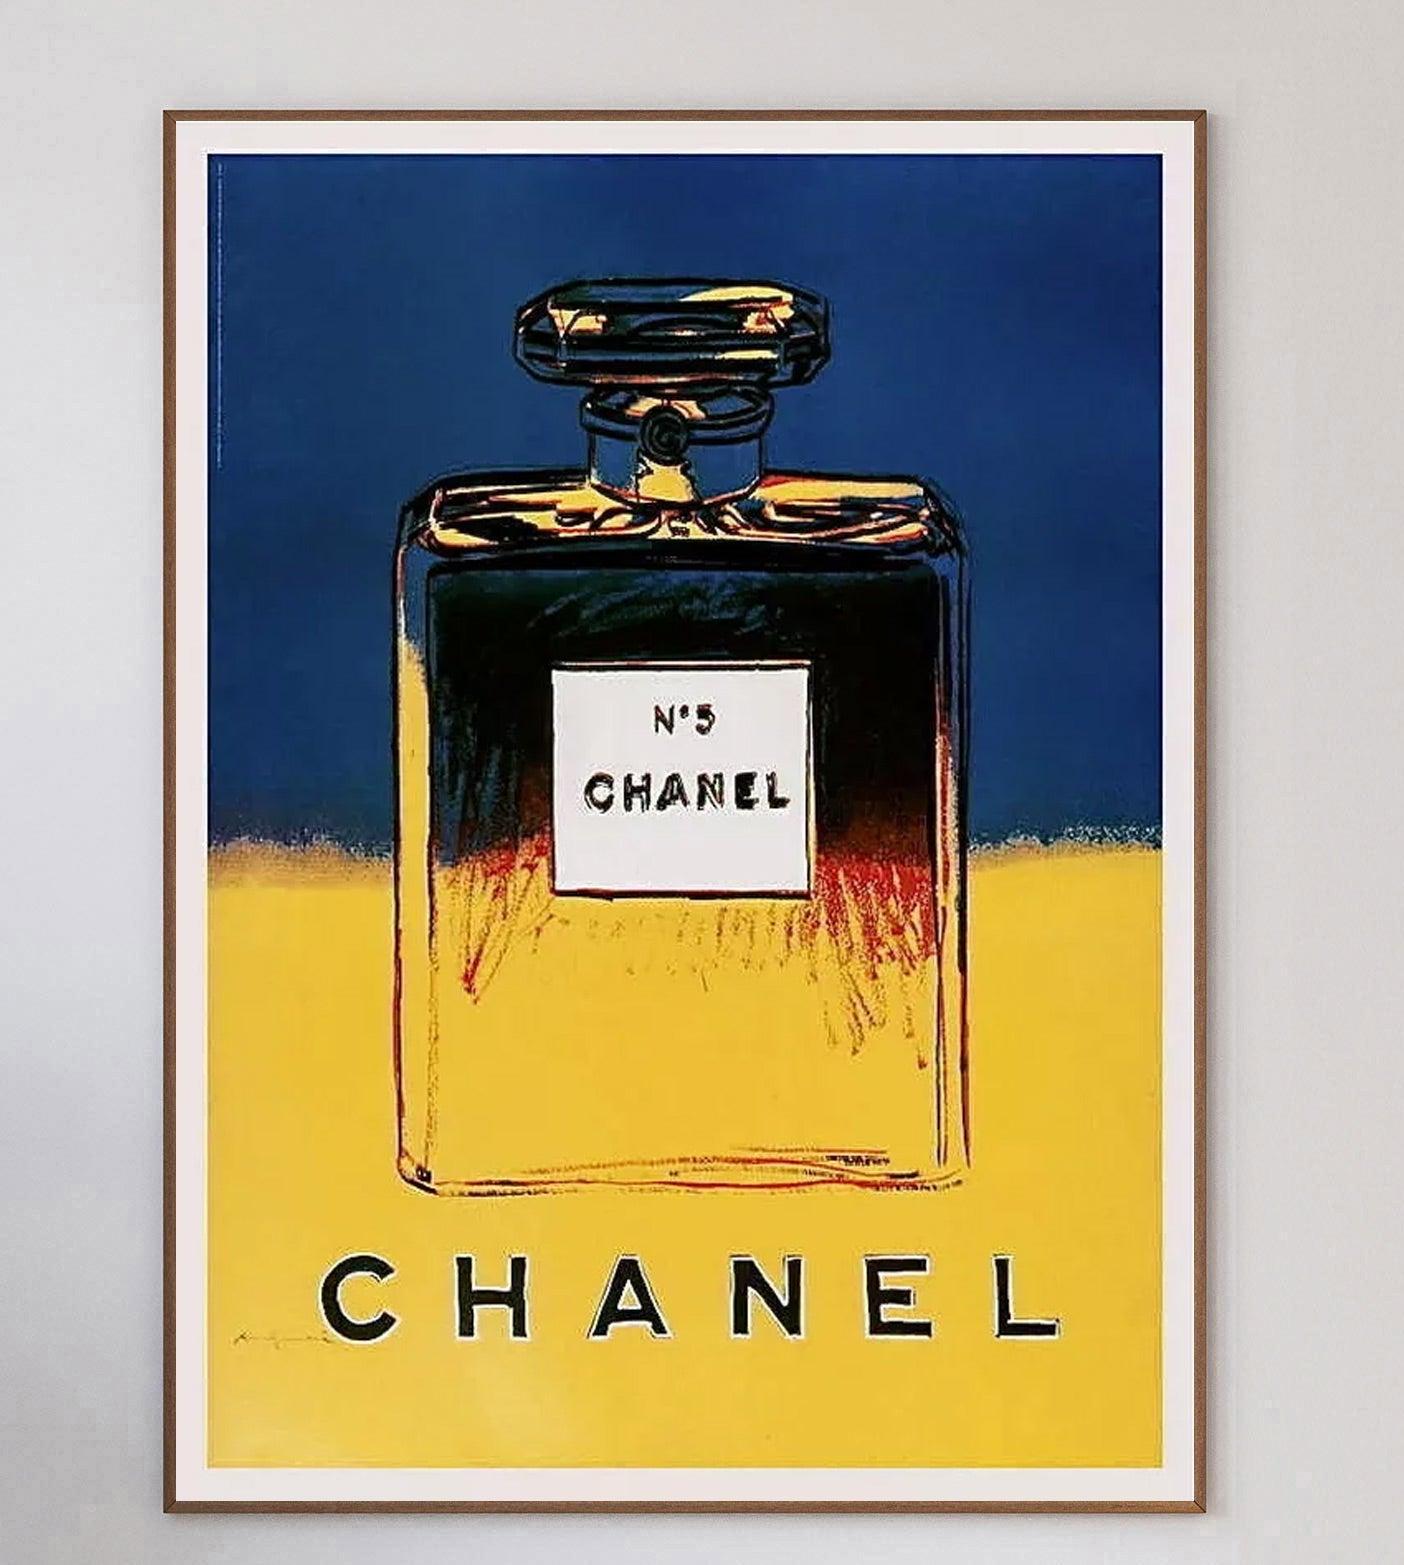 La collaboration entre Andy Warhol et Chanel no.5 est devenue une véritable icône en 1985, lorsque Warhol a produit une sélection de sérigraphies dans le cadre de sa série ADS. Les pièces ont ensuite été utilisées par Chanel dans le cadre d'une